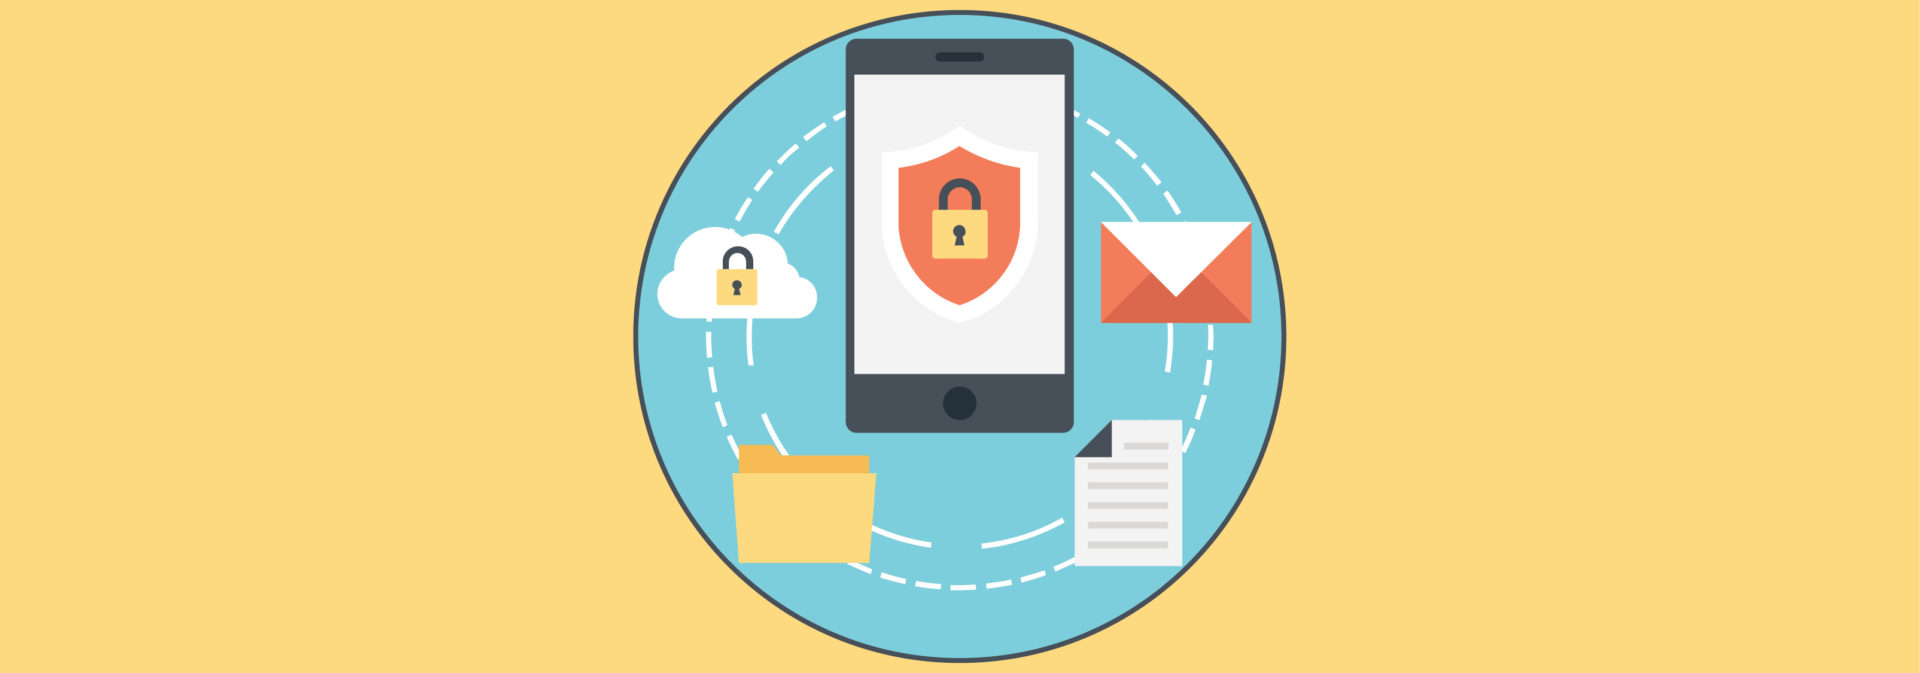 Как защитить личные данные от утечки в Интернет?